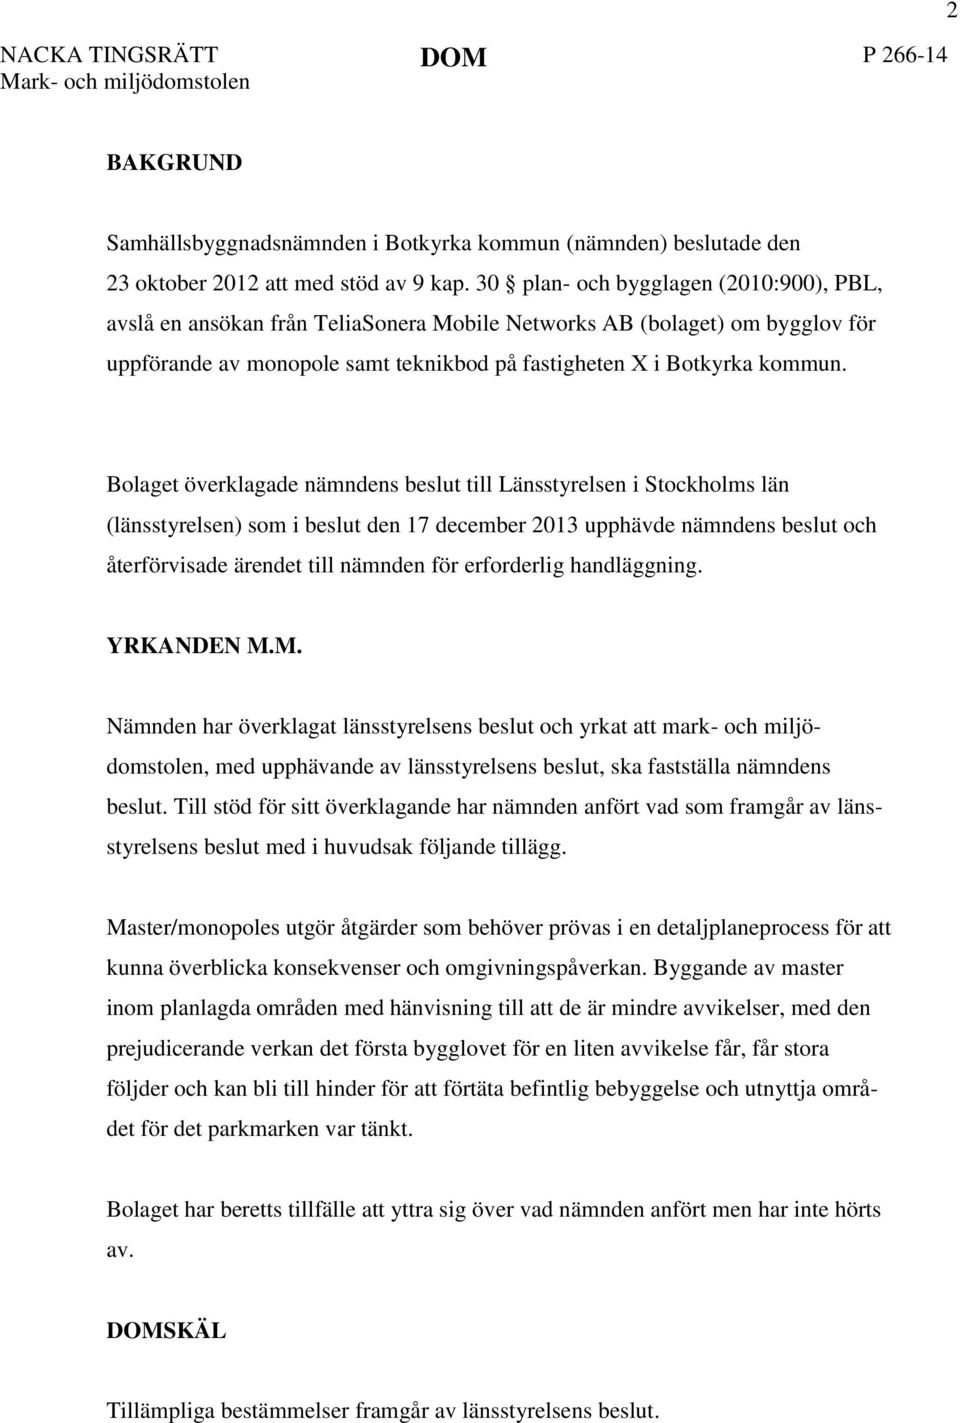 Bolaget överklagade nämndens beslut till Länsstyrelsen i Stockholms län (länsstyrelsen) som i beslut den 17 december 2013 upphävde nämndens beslut och återförvisade ärendet till nämnden för